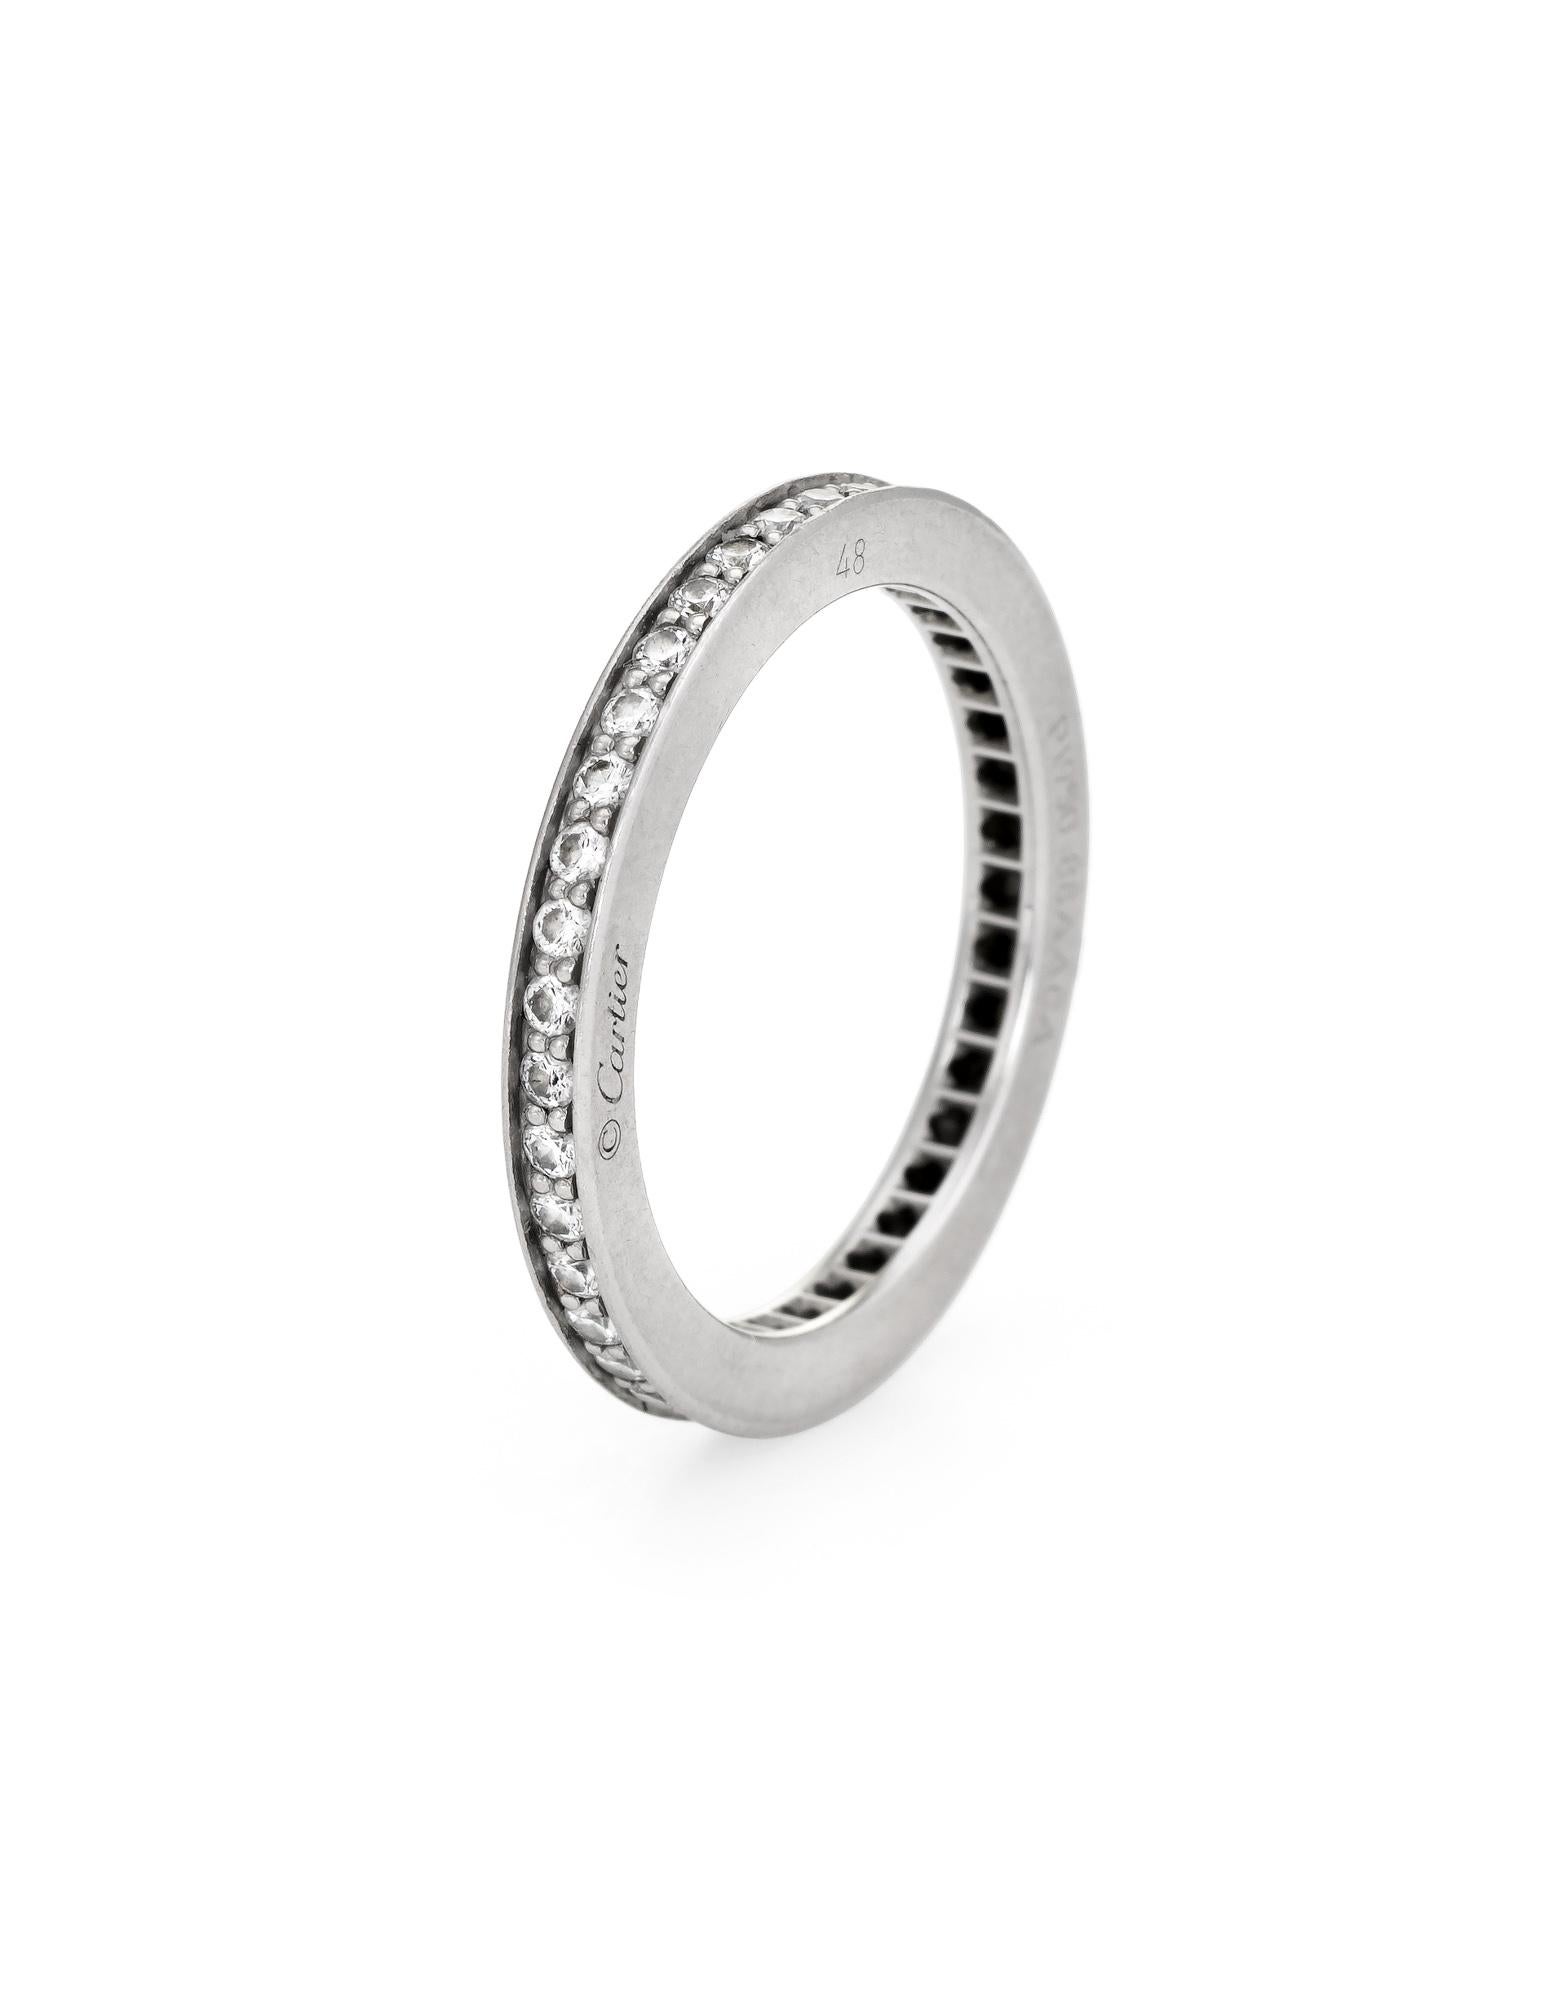 Diamantring Cartier D'Amour aus 950er Platin aus Vorbesitz.  

Der Cartier-Ring aus zweiter Hand ist mit 0,15 Karat Diamanten besetzt (geschätzte Farbe: F-G und Reinheit: VVS2). Der Ring kostet 3.150 Dollar (plus Steuern).

Der Ring ist in